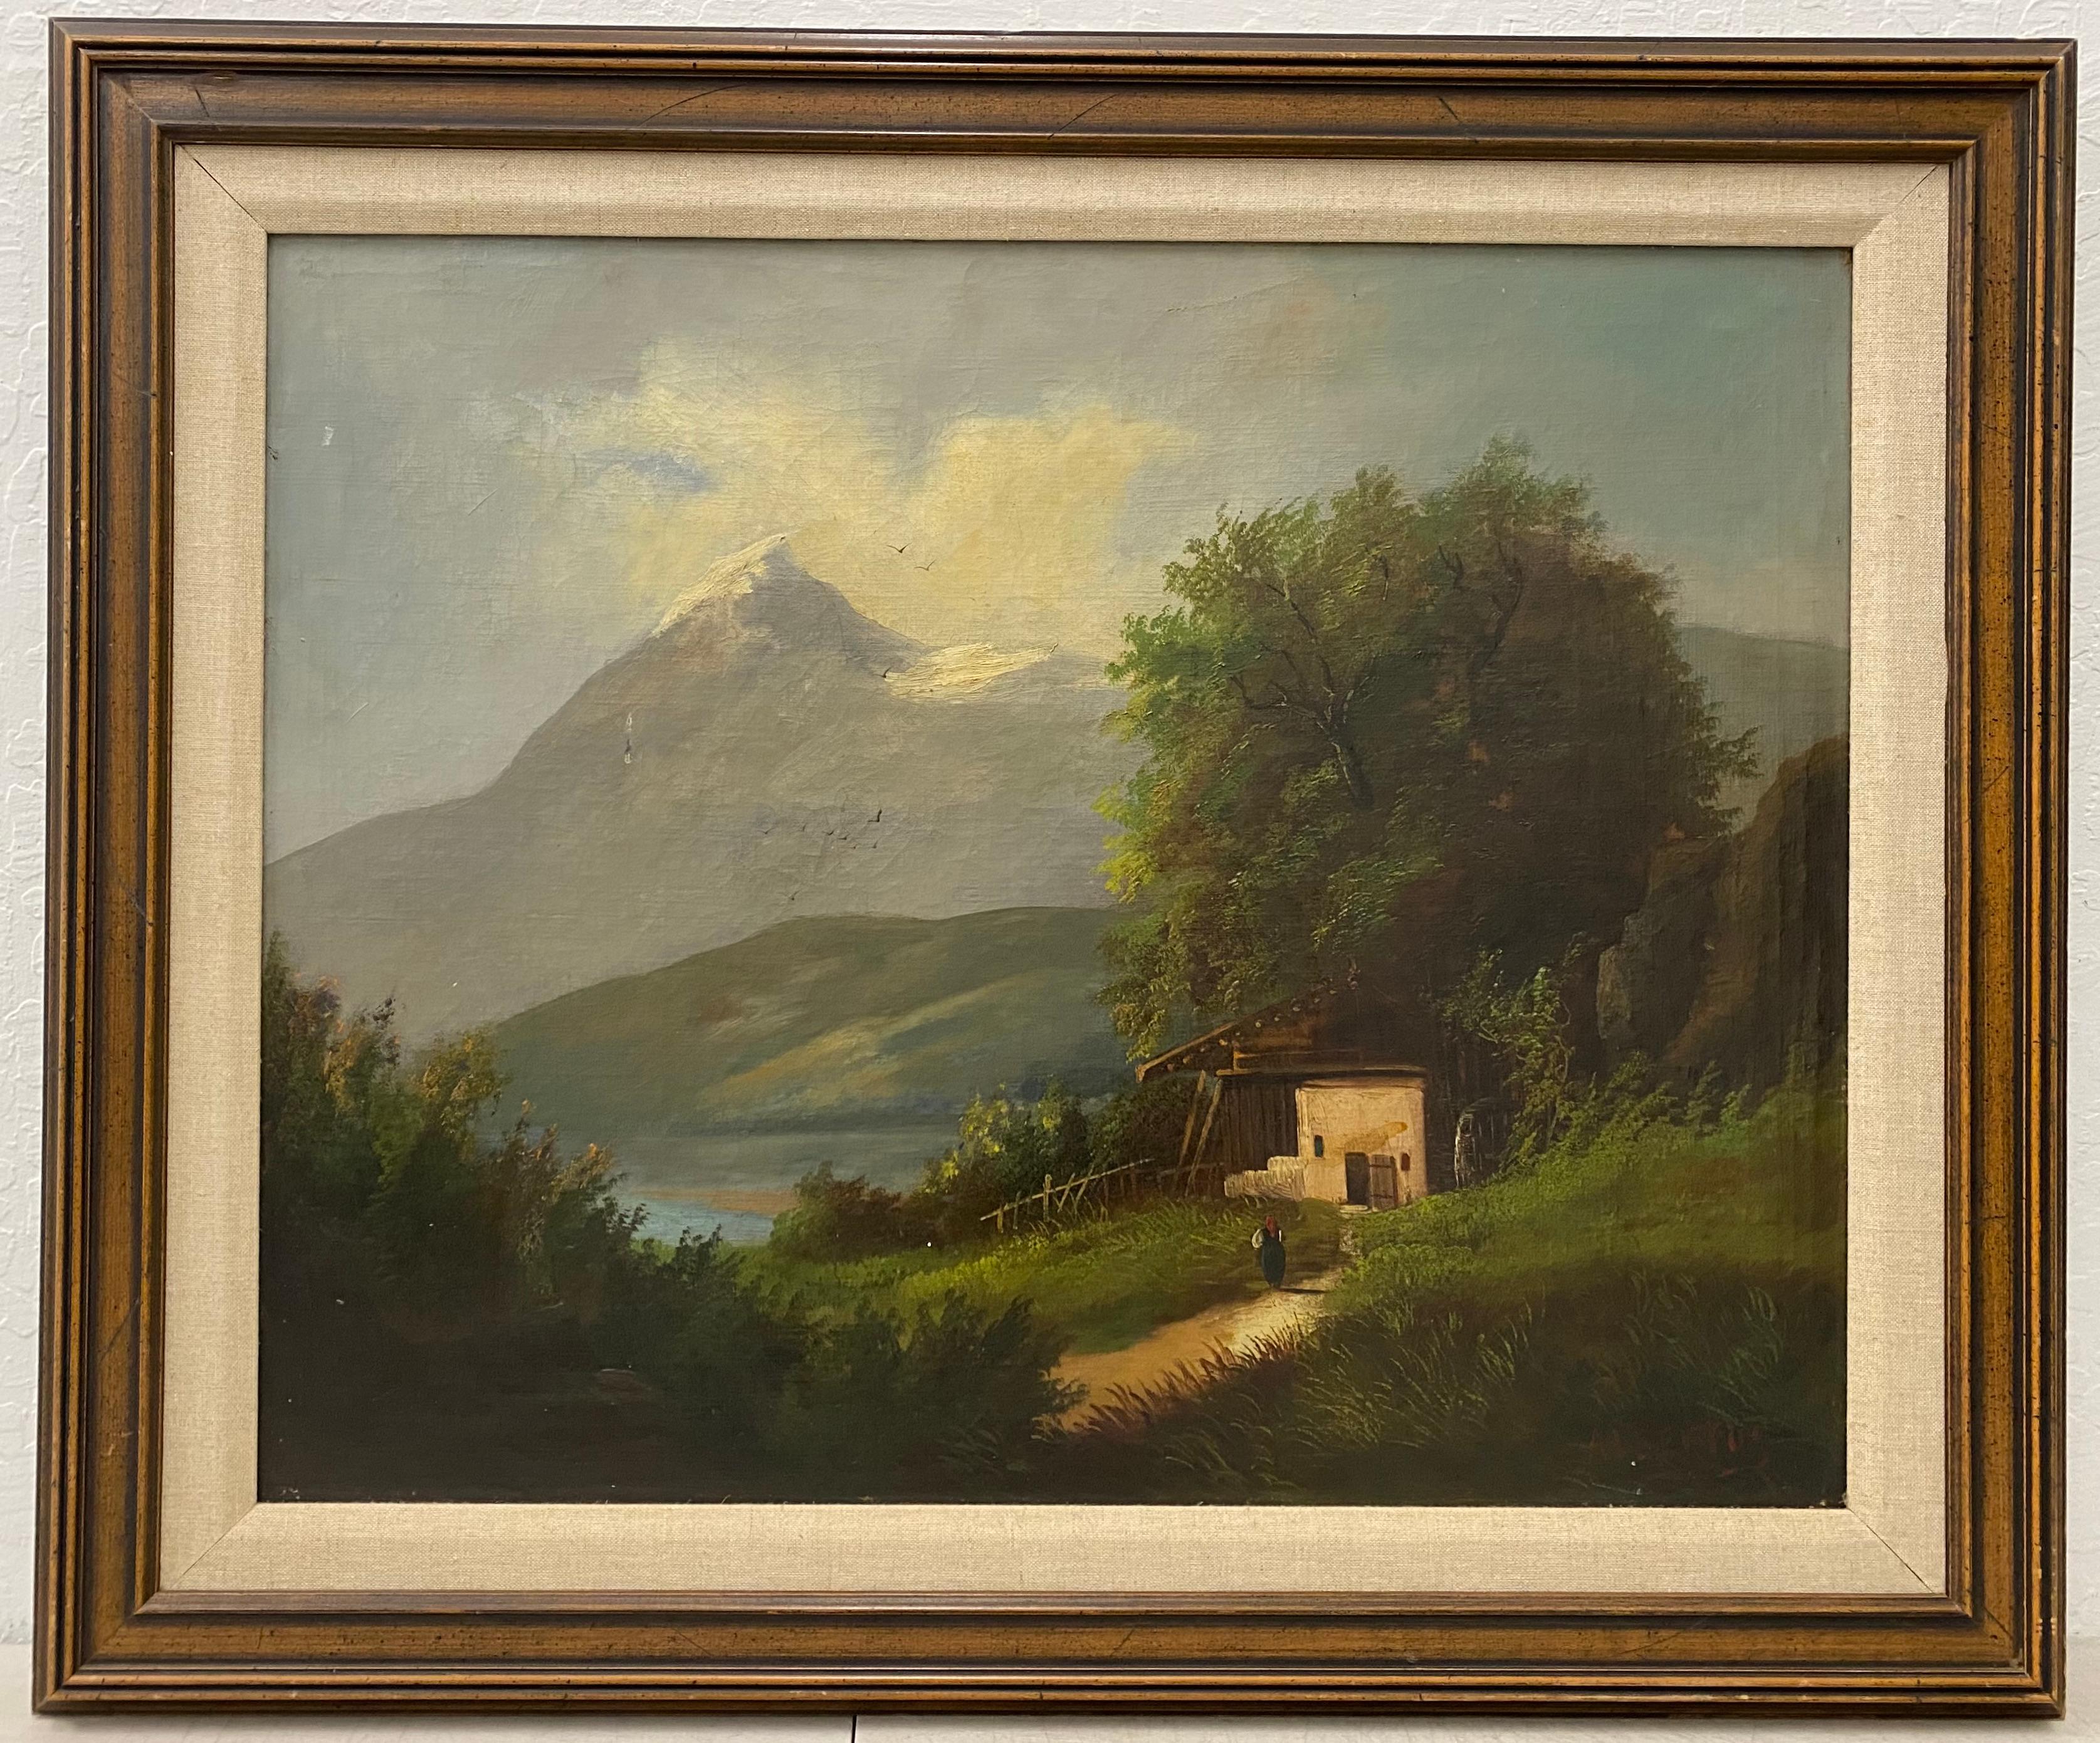 Unknown Landscape Painting – Mountain Home Landscape, Originalgemälde von Albertos, ca. 1920